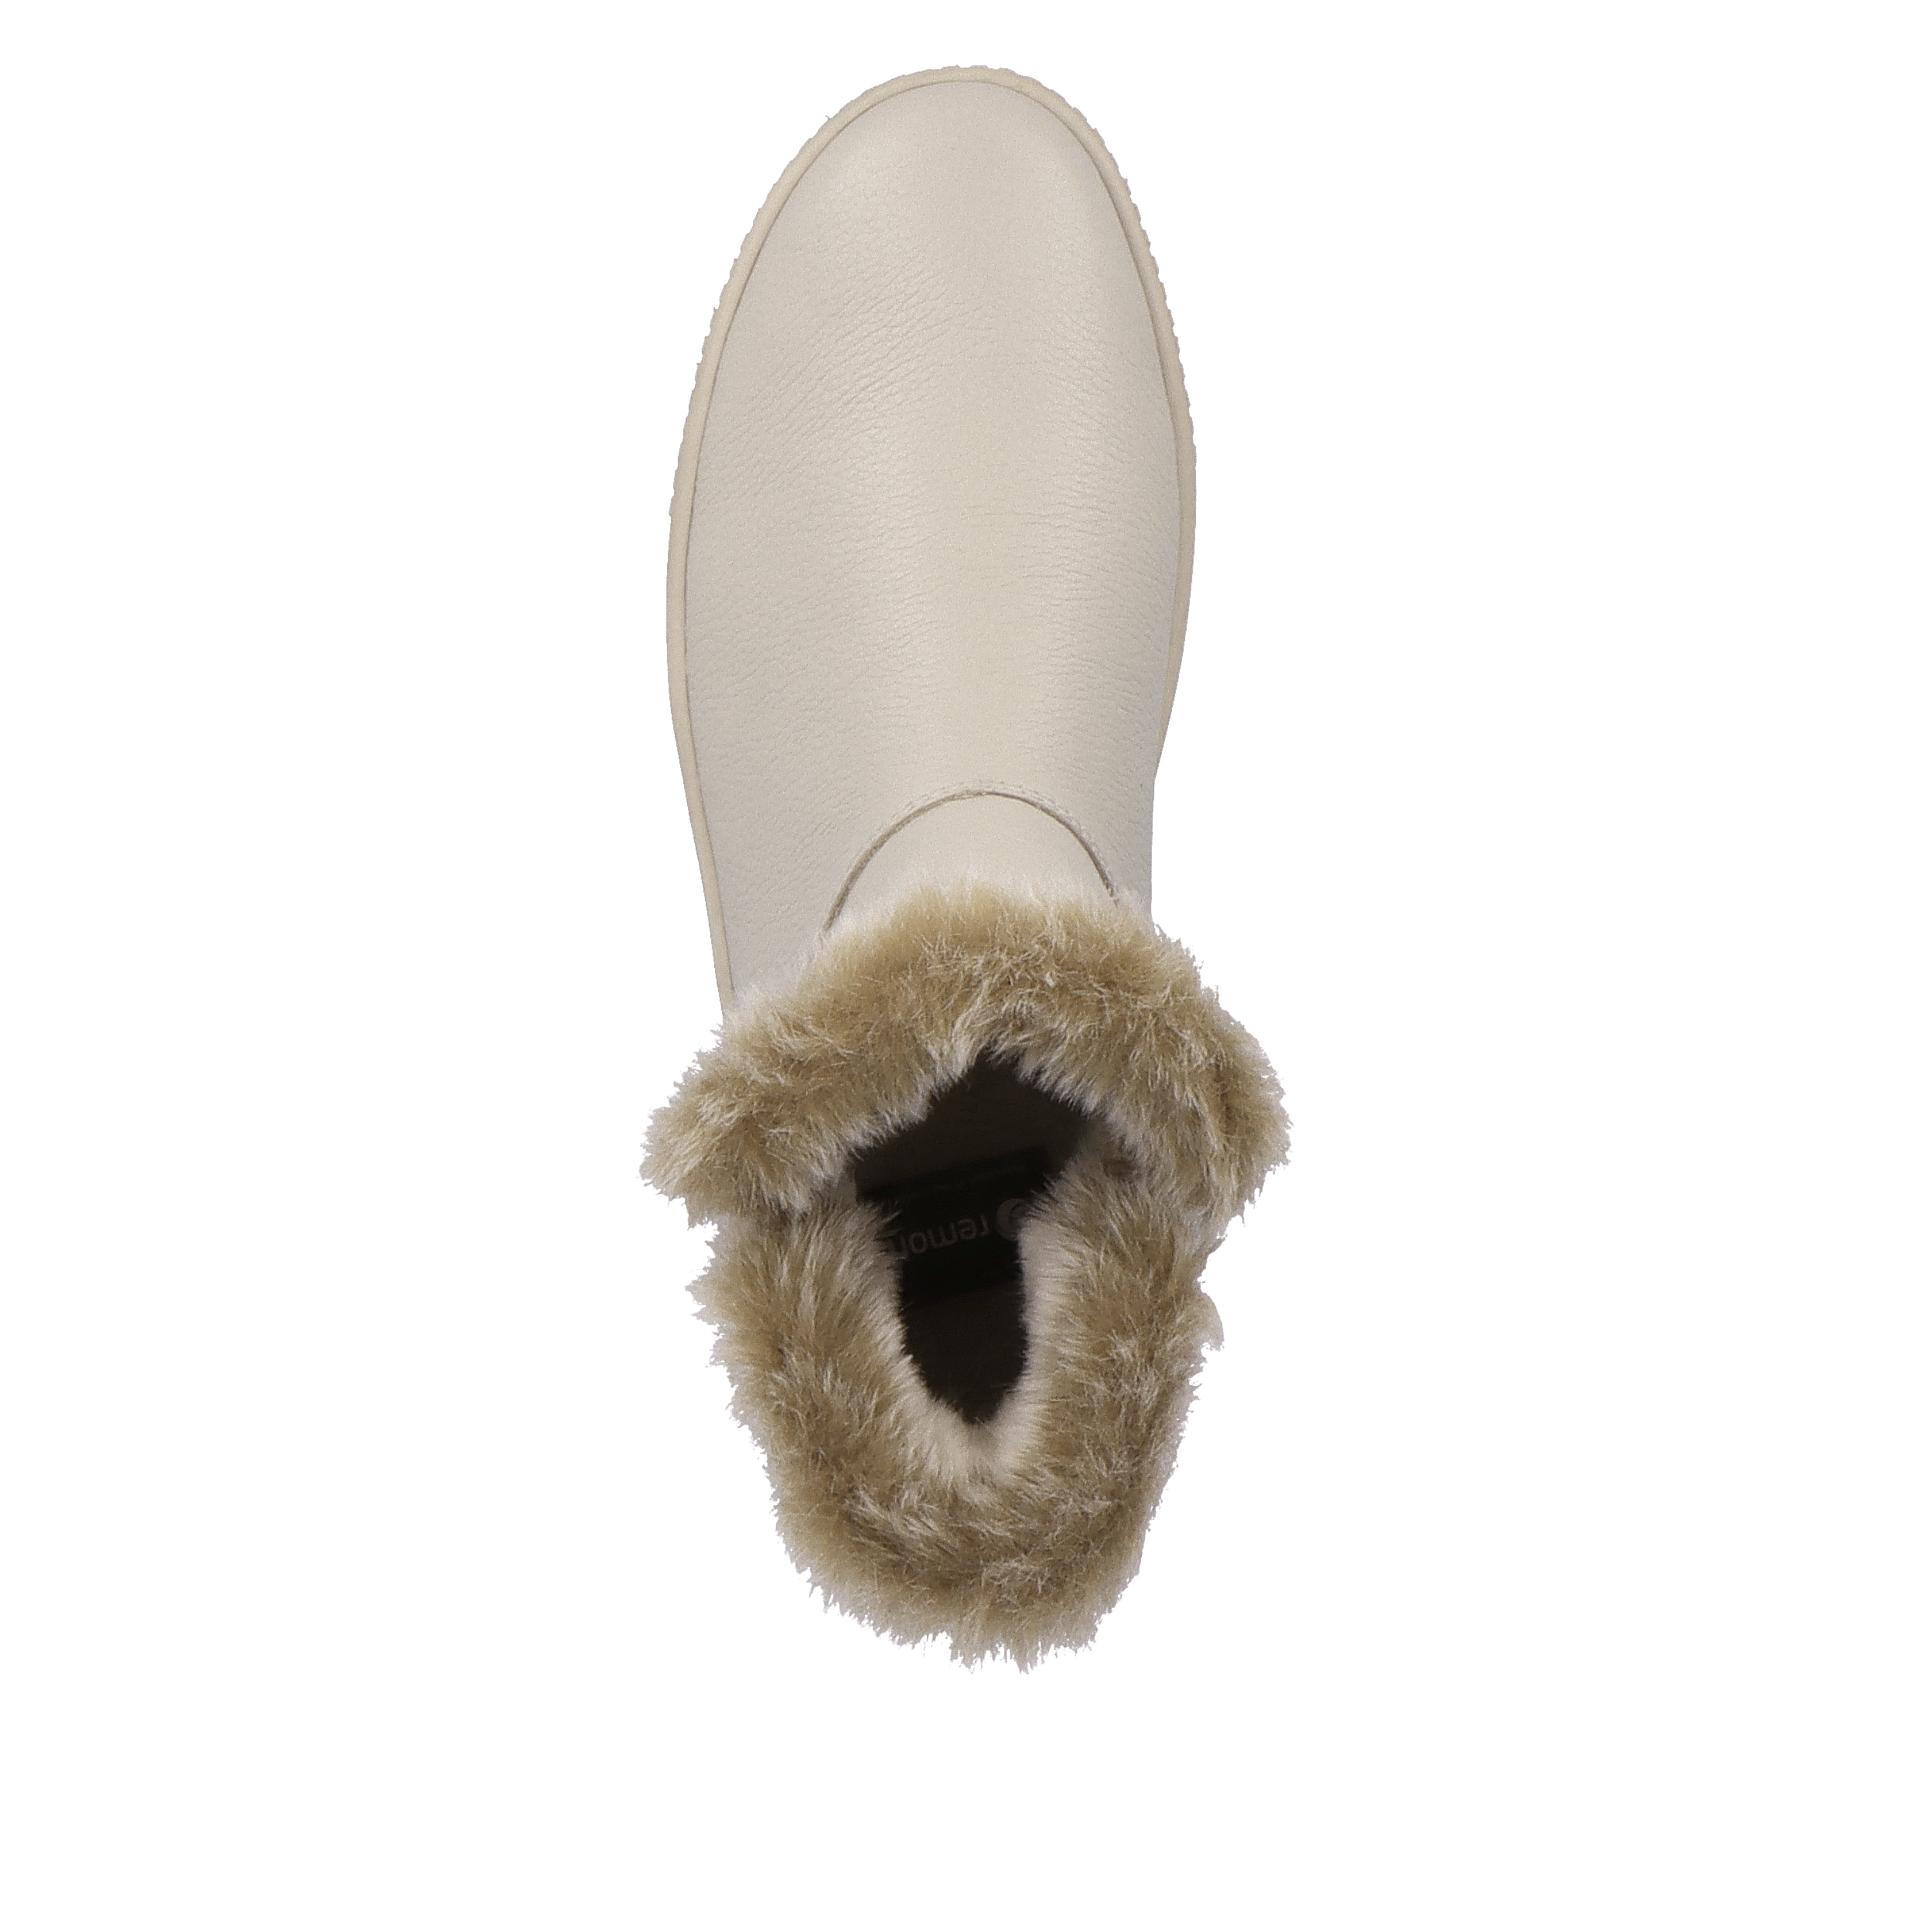 Bottines beiges pour femme marque Remonte. Référence R7999-60 Crema. Disponible chez Chauss'Family magasin de chaussures Issoire.